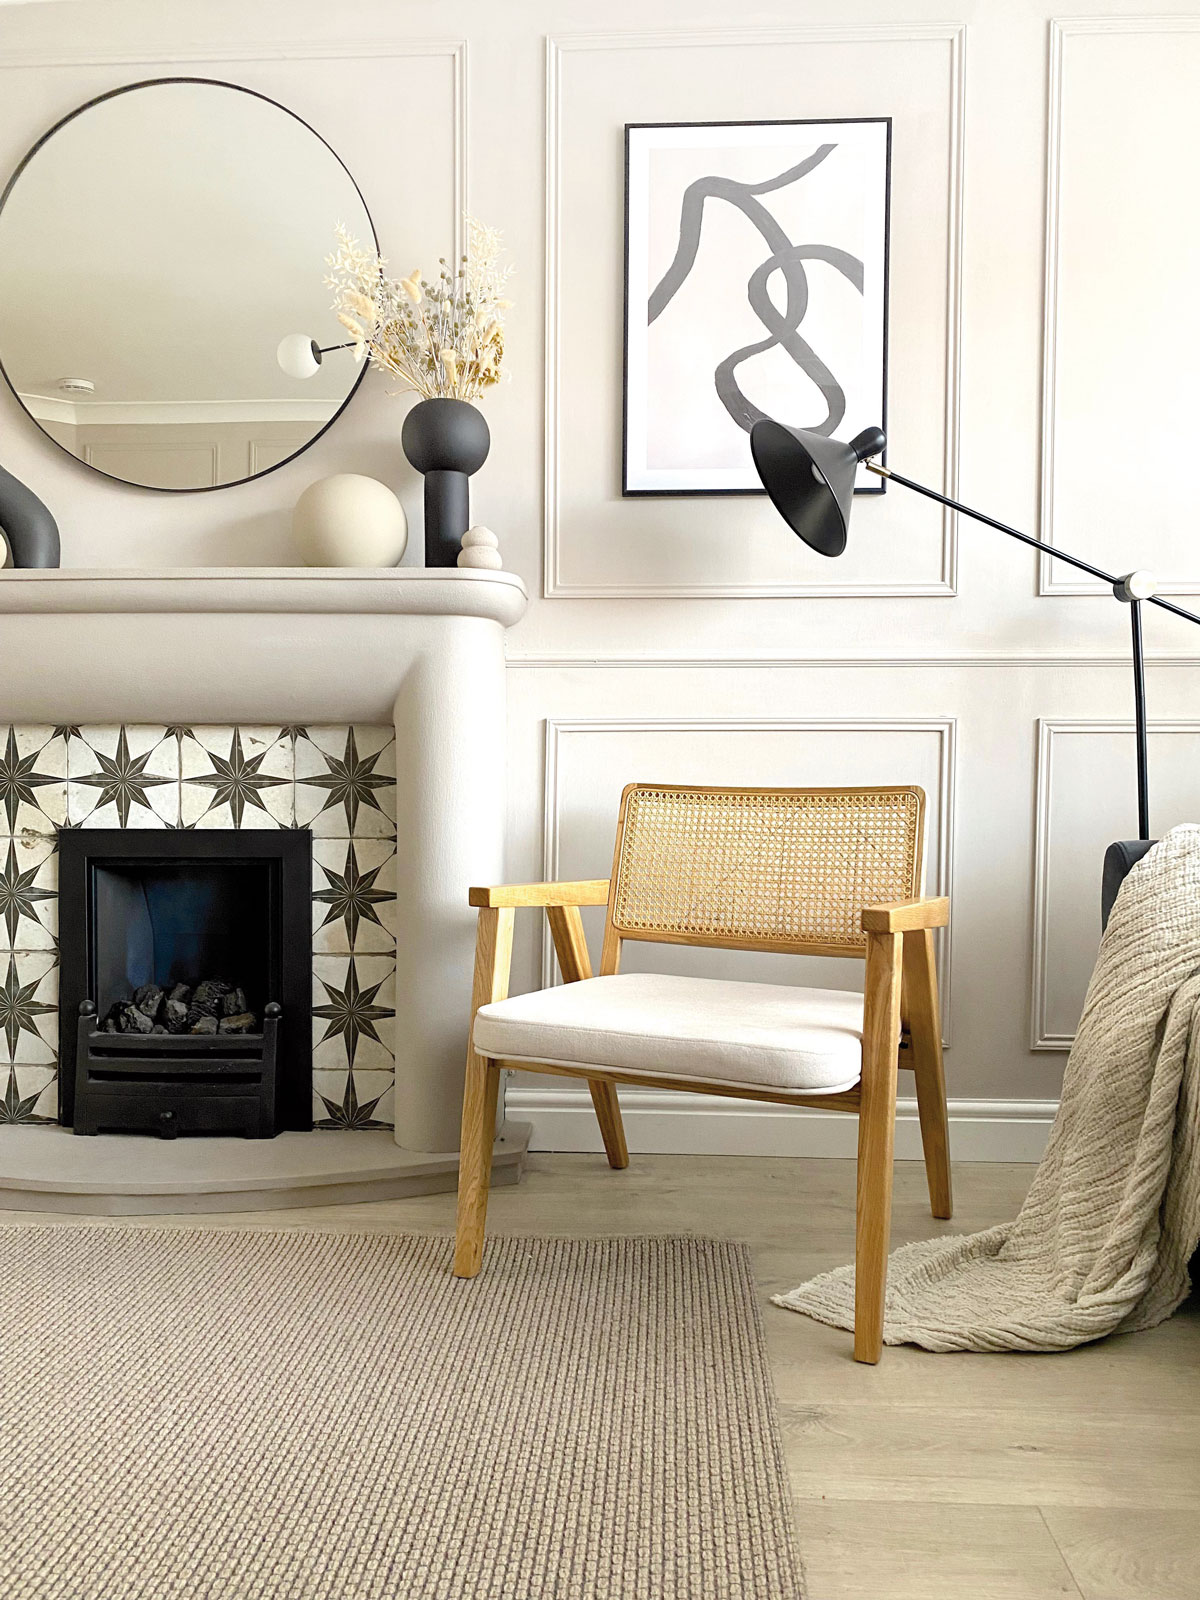 Interiér s dekoračnými lištami na stene, ladený do odtieňov bielej, s drevenou stoličkou a krbom